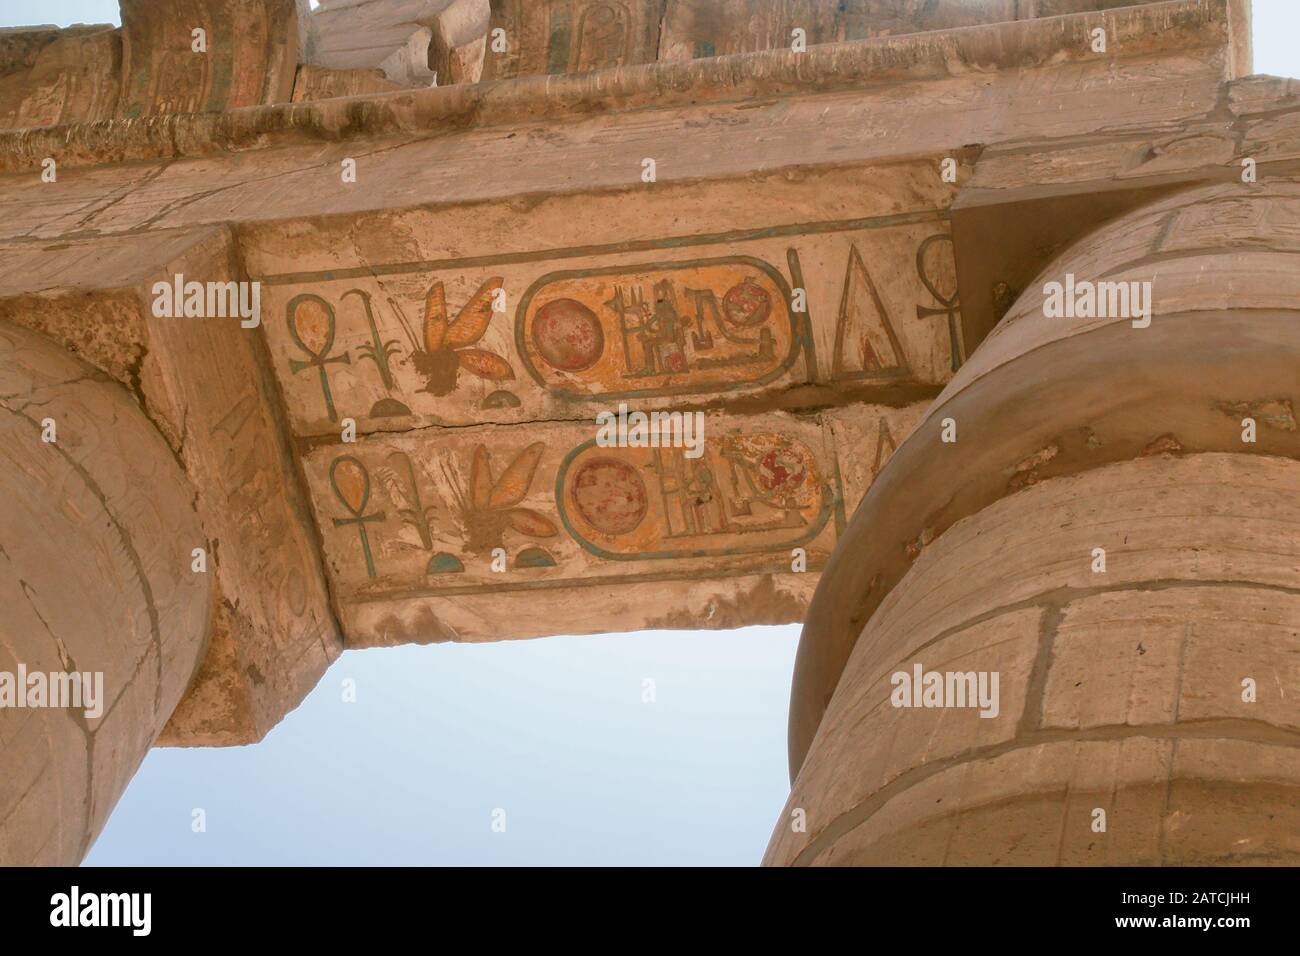 Luxor, Karnak, Egipto, África. Templo de Karnak. Buscando. Jeroglíficos de relieve pintados y tallados. Foto de stock